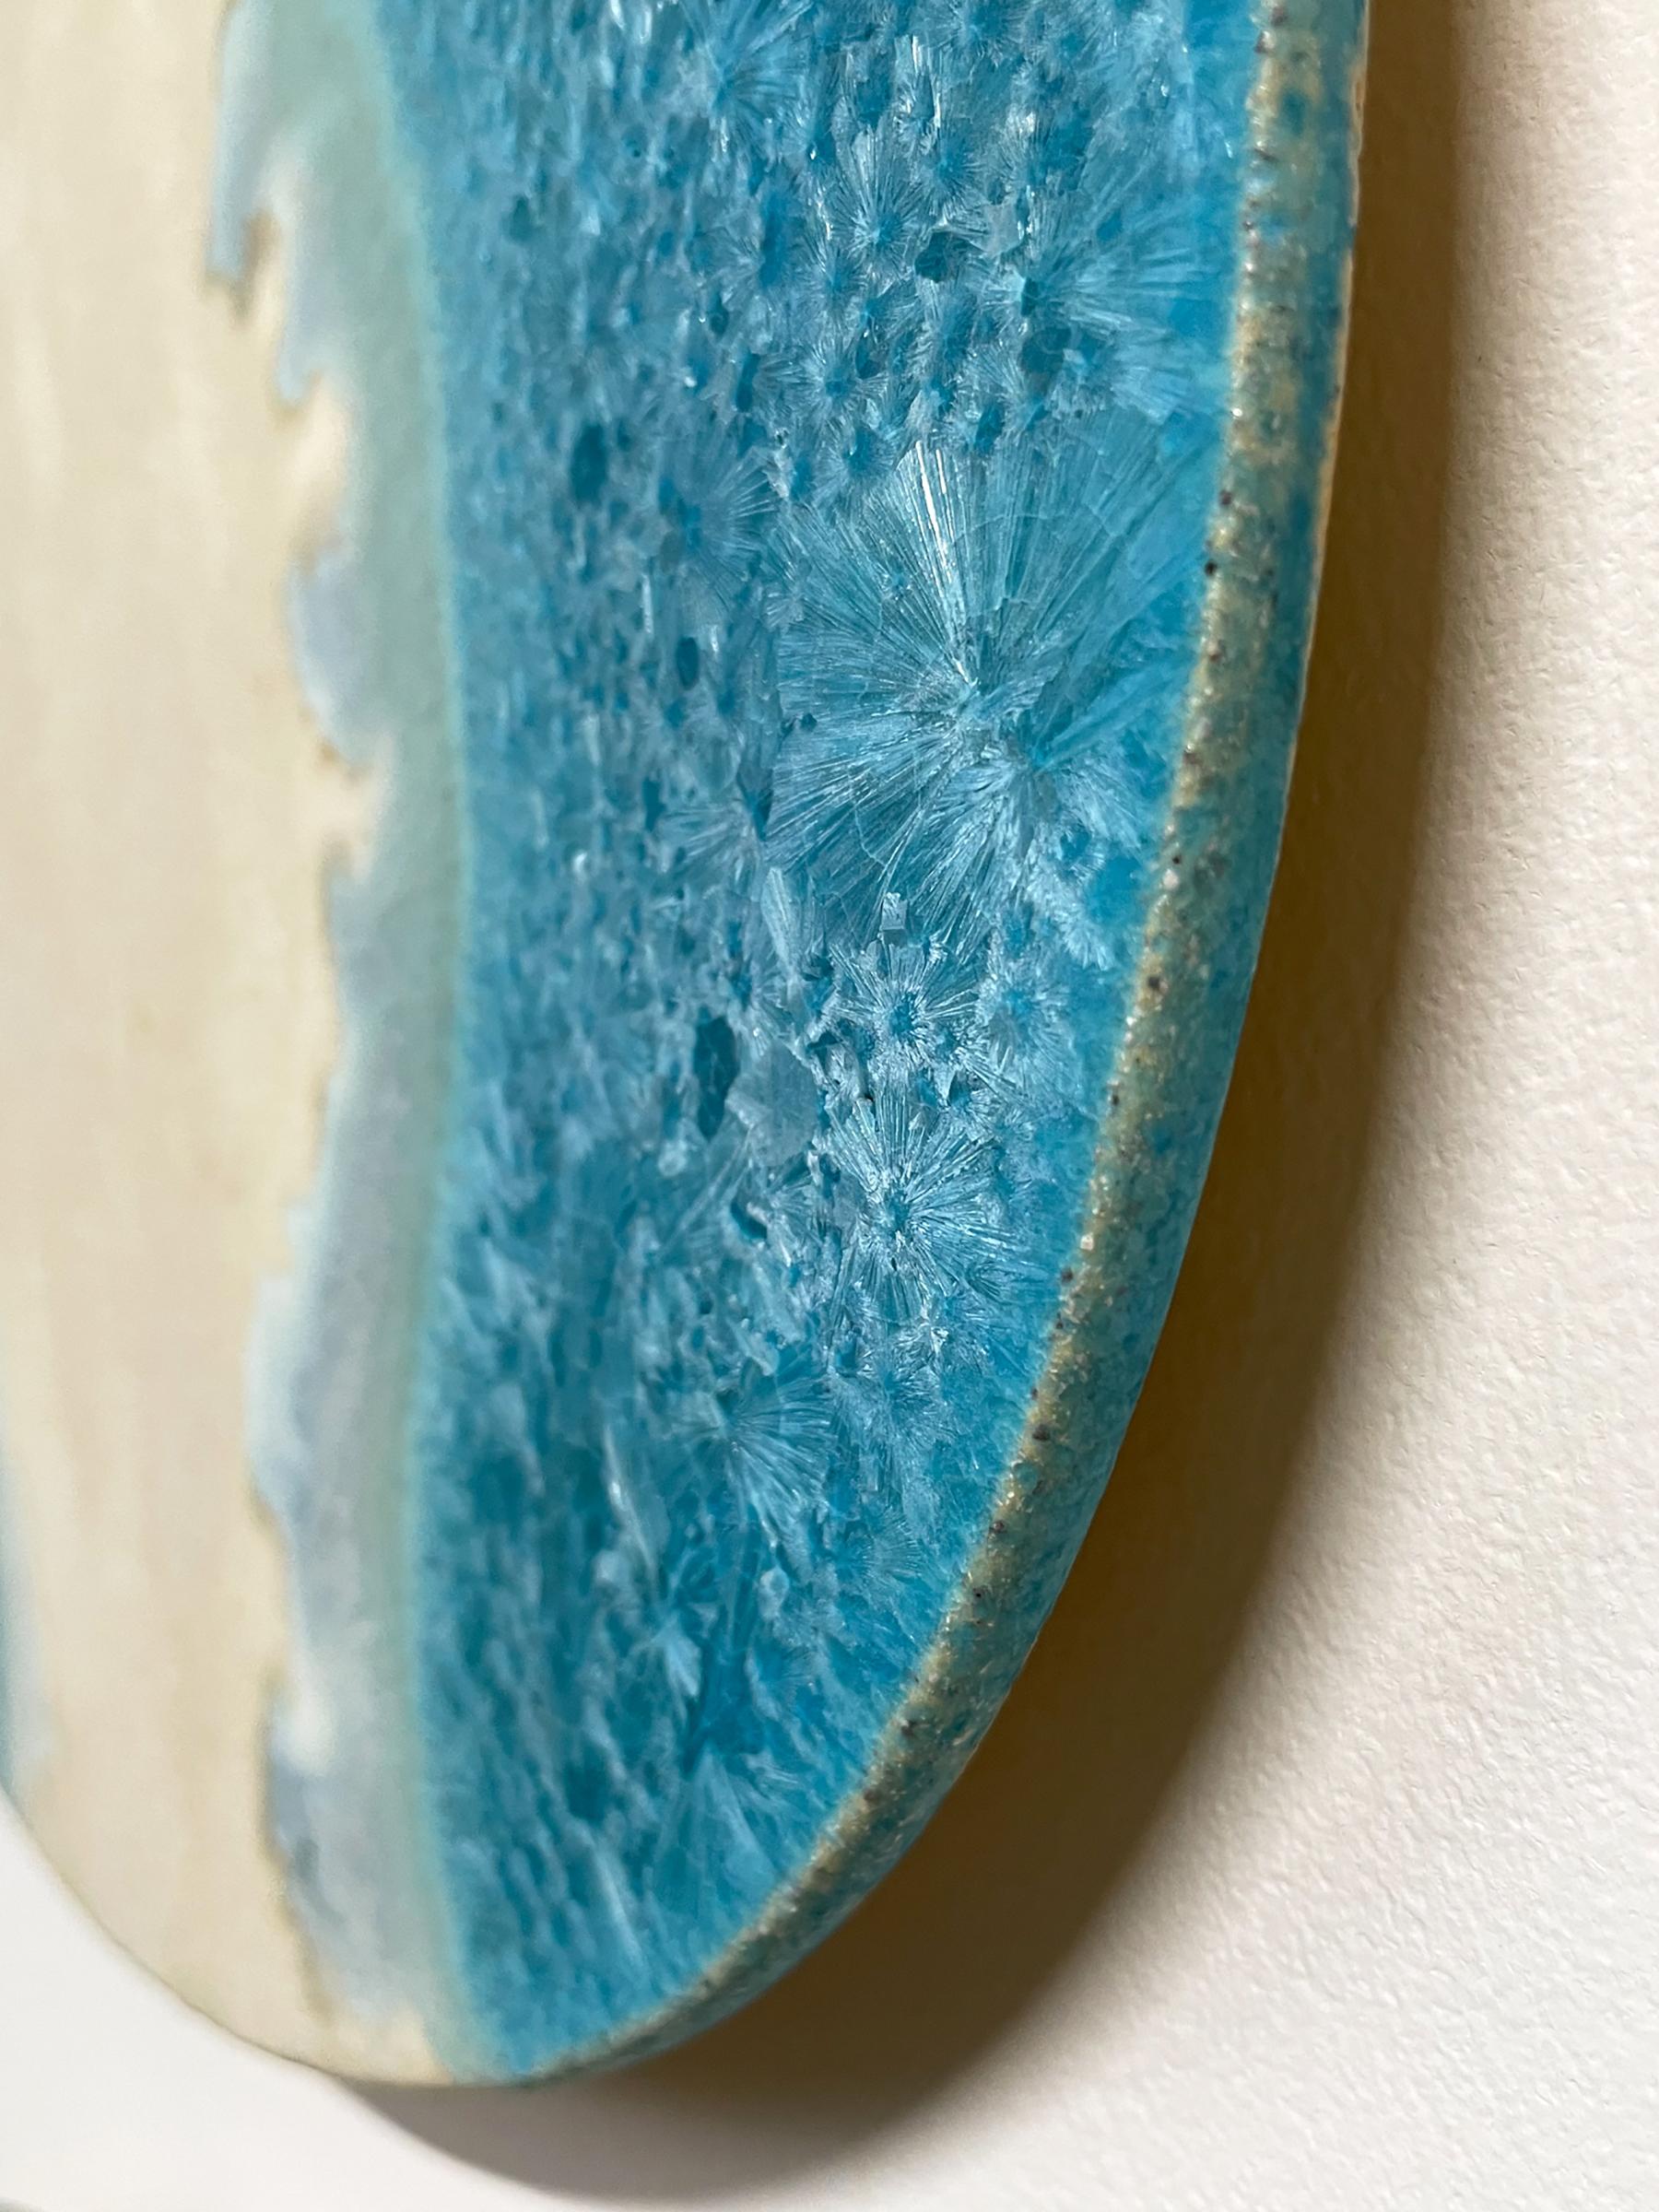 Glazed Radiating Waves, Ceramic wall art by William Edwards